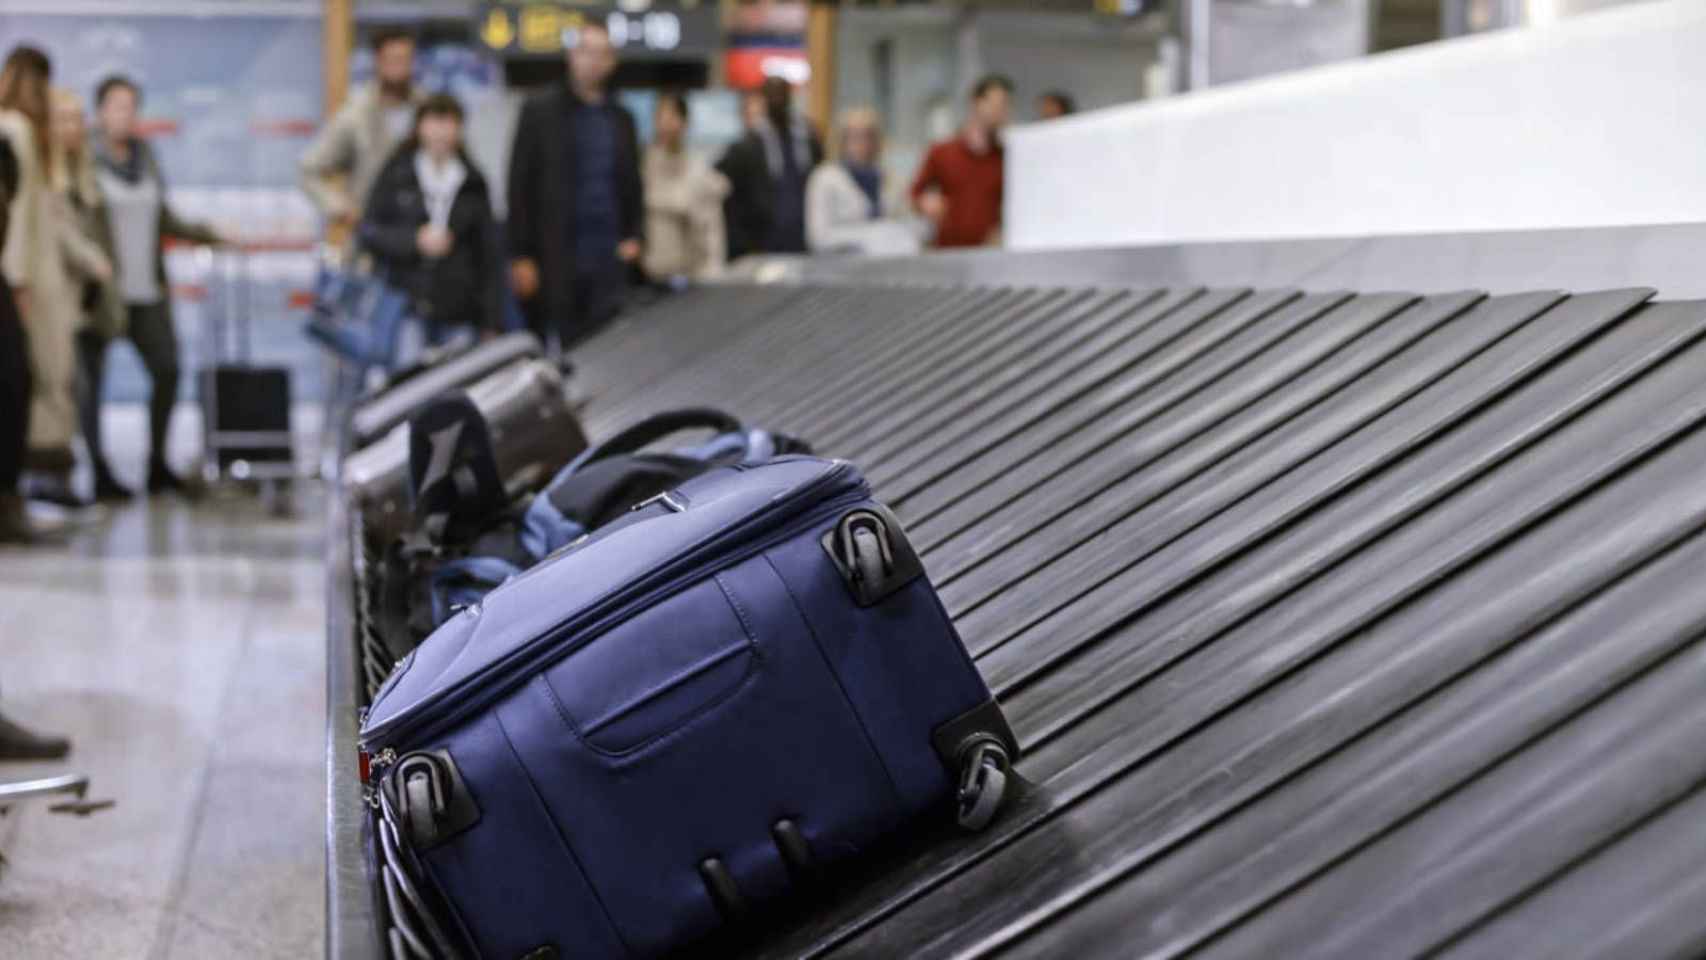 Varias maletas en una cinta de aeropuerto